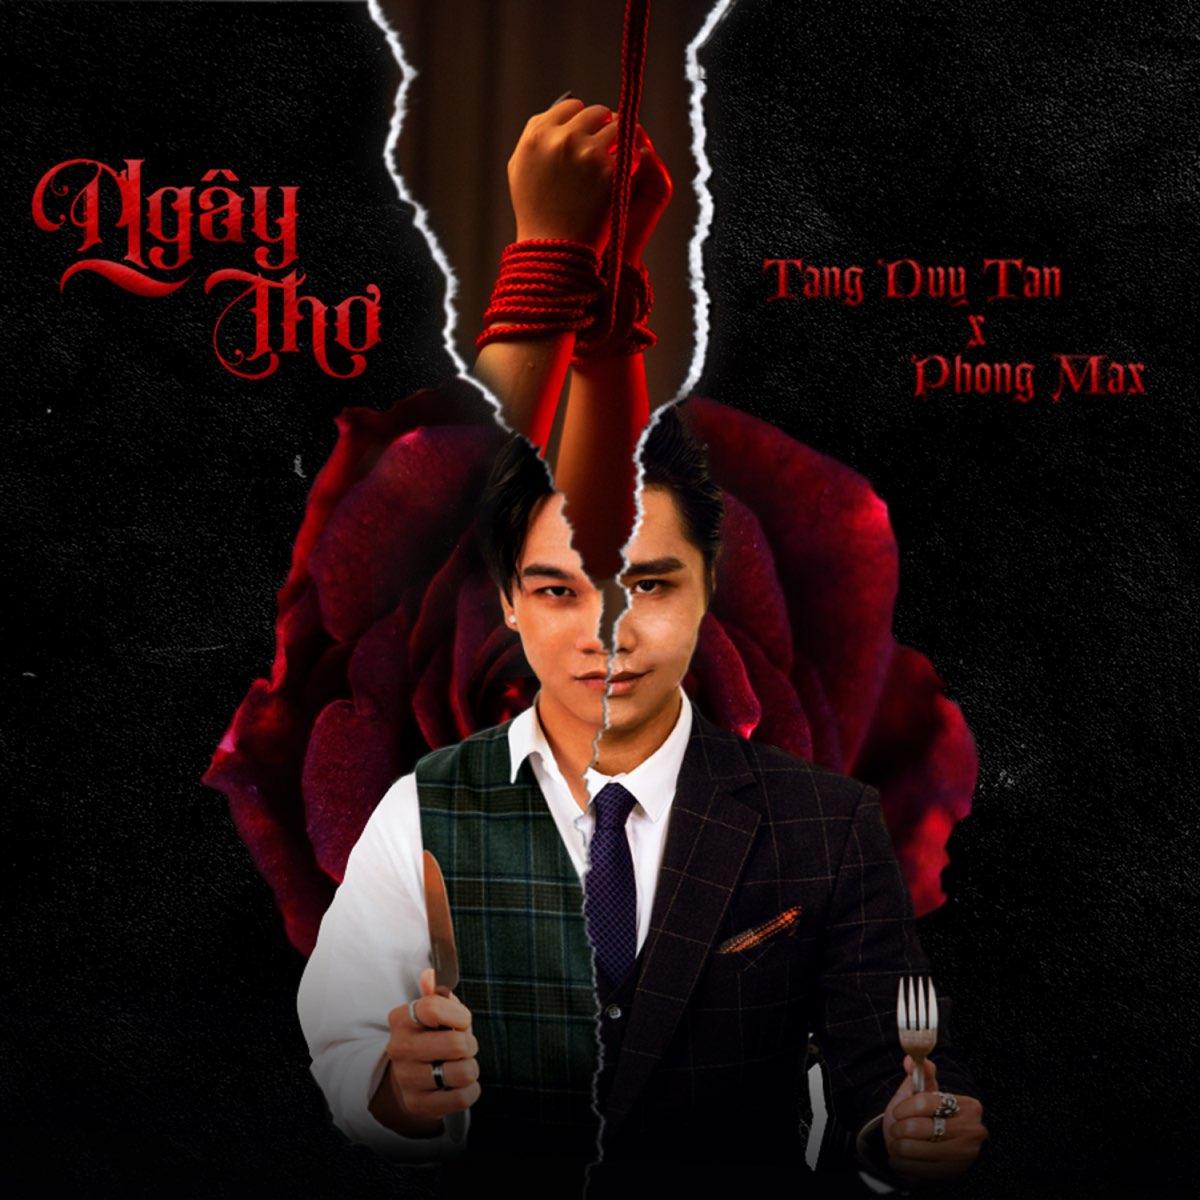 Ngây Thơ 甘德 - Tang Duy Tan x Phong Max (Ảnh: Internet)